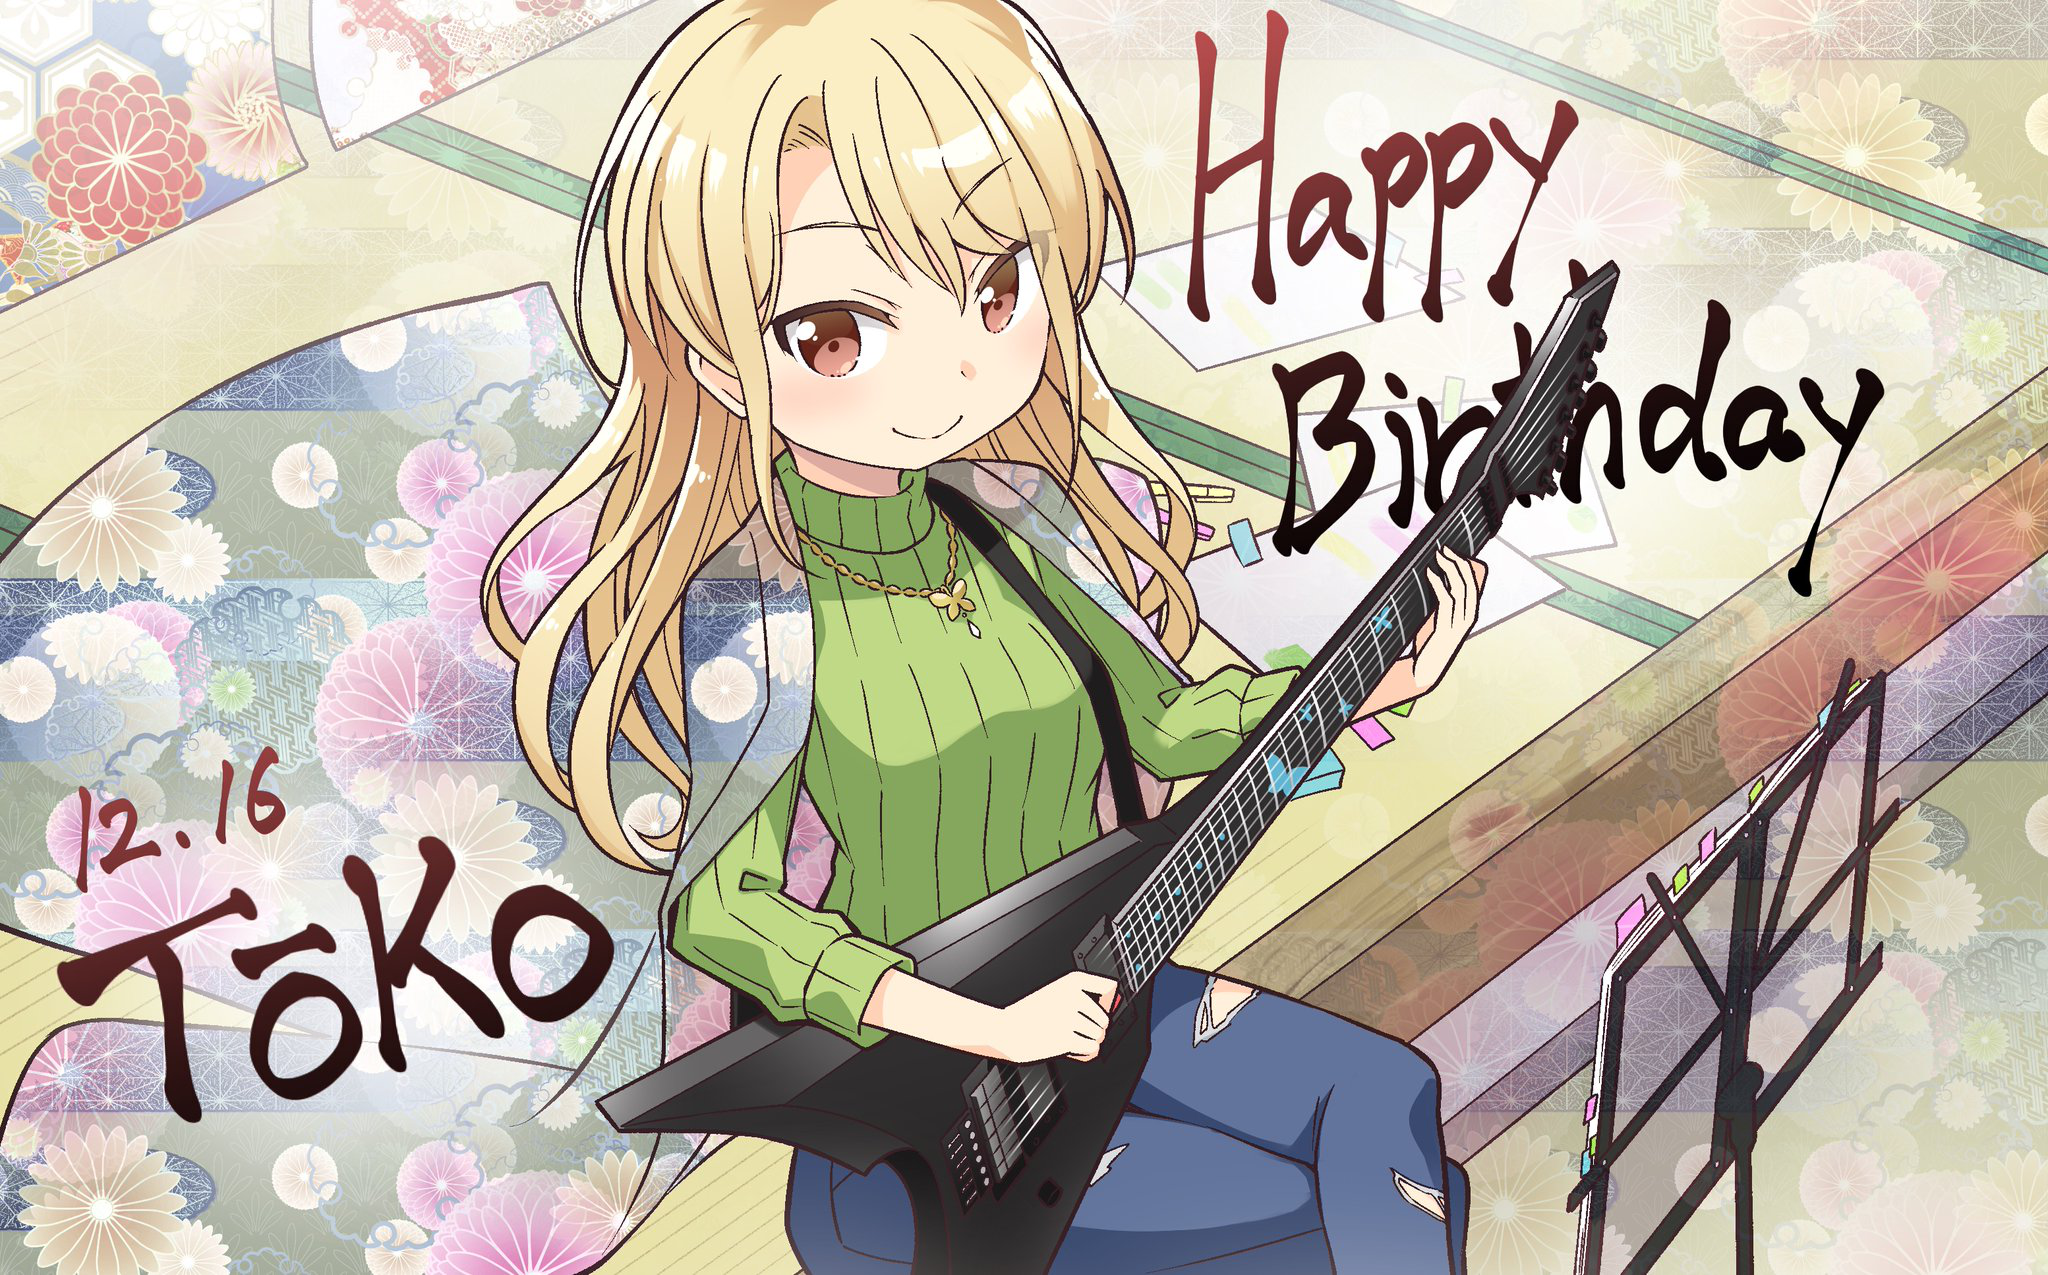 Happy Birthday 2020 - Touko